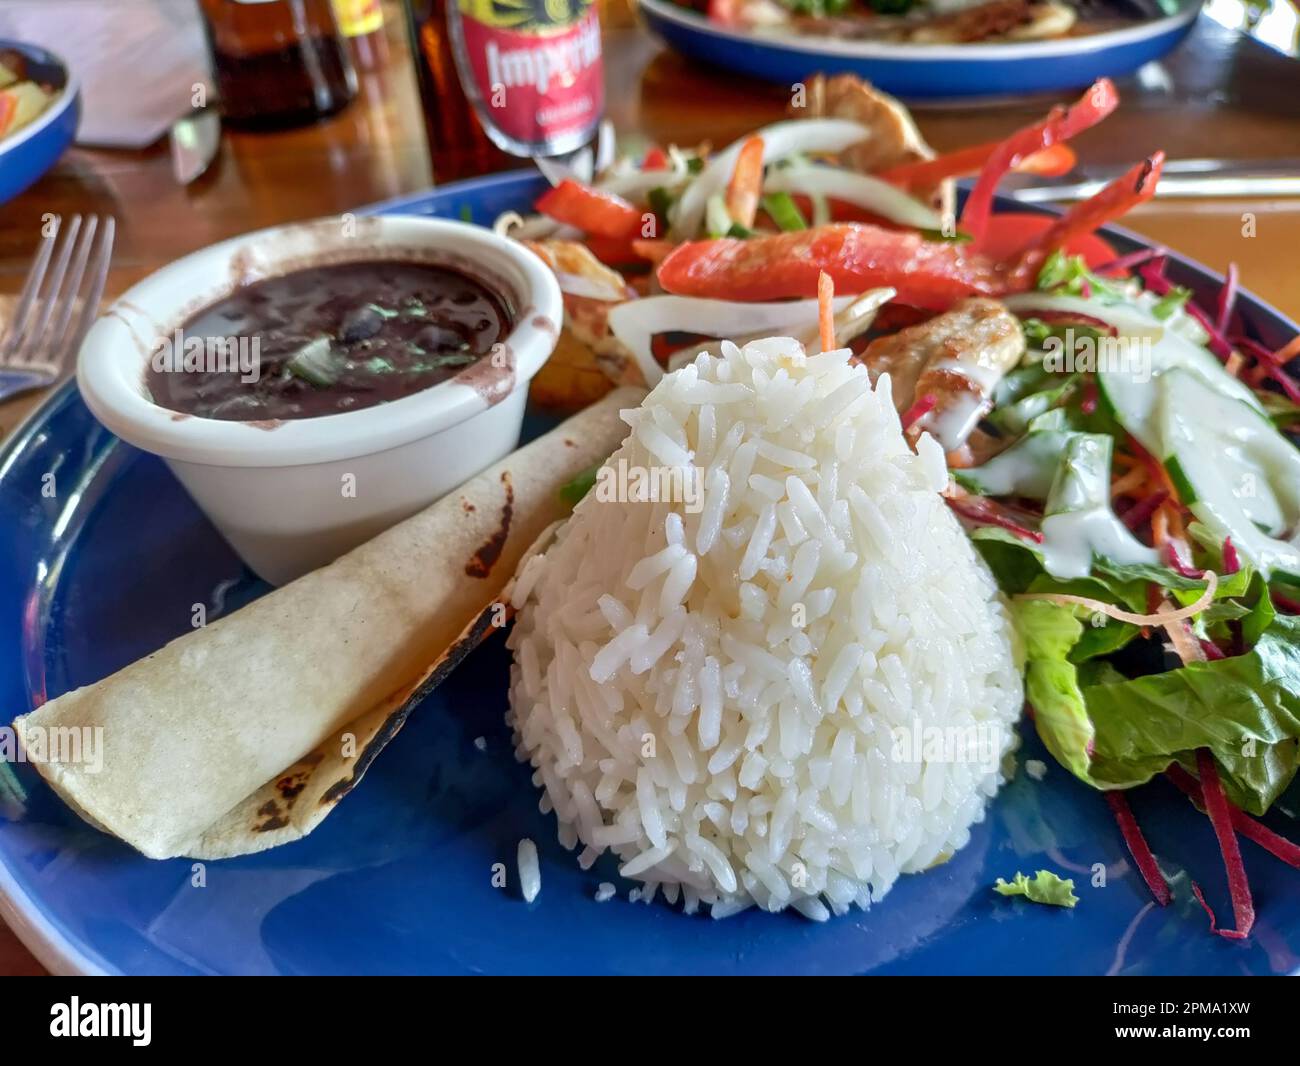 La Fortuna, Costa Rica - Casado, un pranzo tradizionale in Costa Rica. Di solito include riso, fagioli, carne, plantains, insalata, e una tortilla. Foto Stock